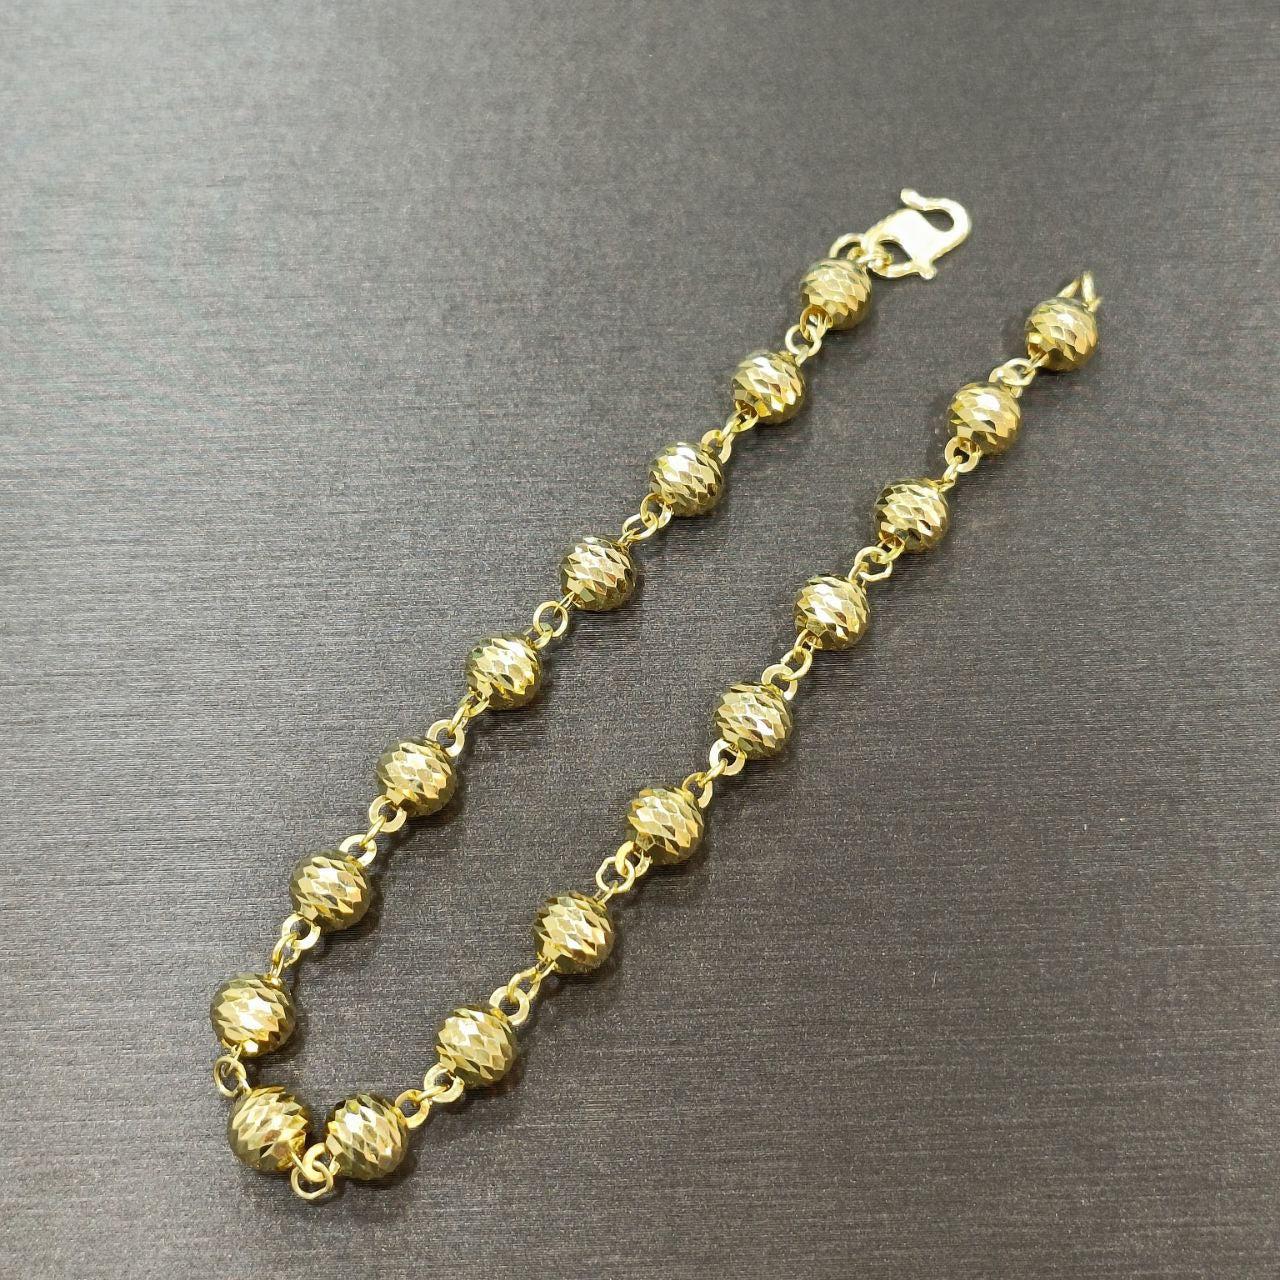 22k / 916 Gold Ball Bracelet V4-916 gold-Best Gold Shop